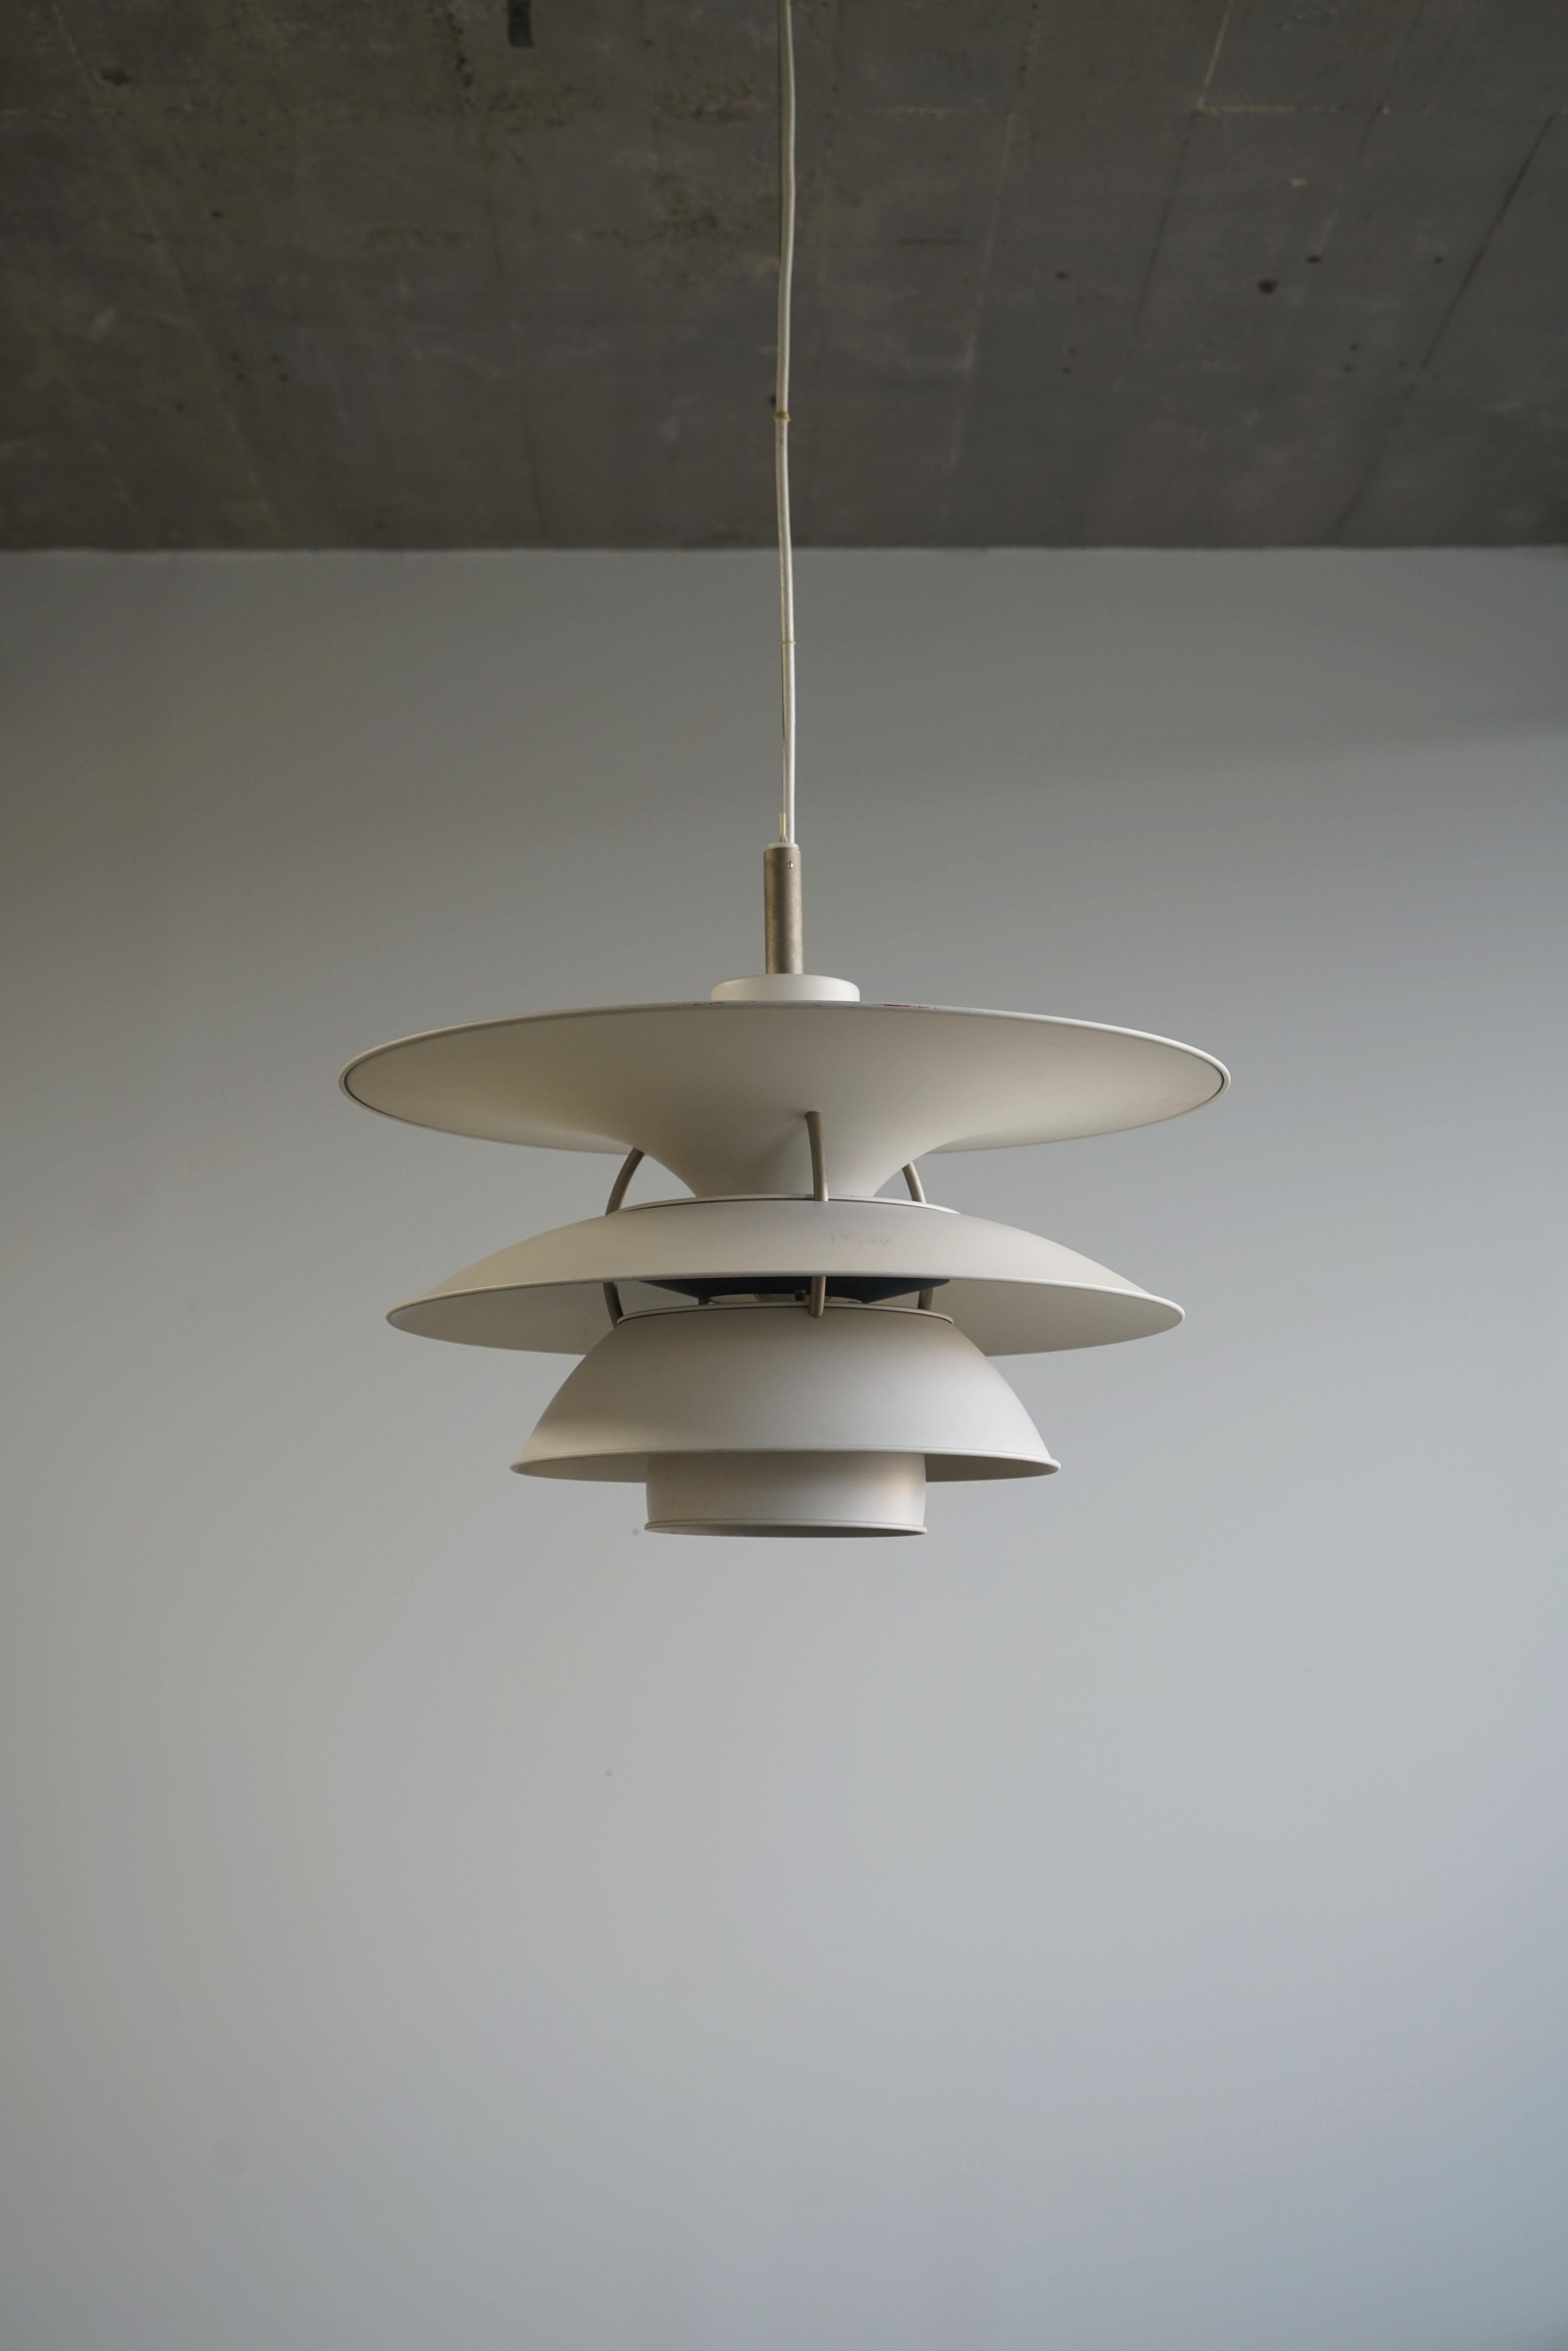 A PH6.5-6 hanging pendant light by Danish designer Poul Henningsen (1894-1967) for Louis Poulsen. 

26